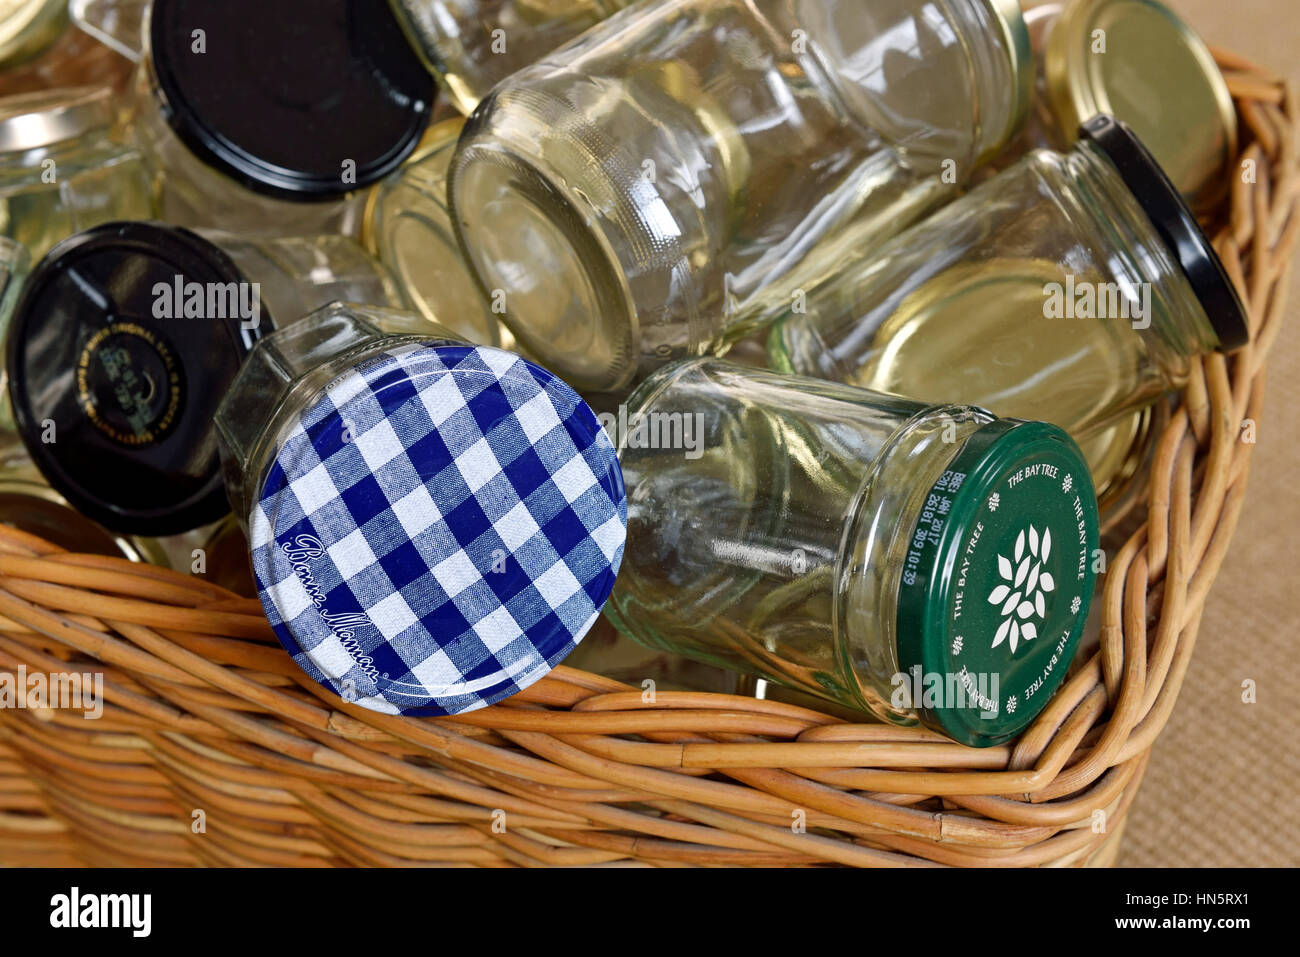 Leere Gläser im Korb gewaschen und für die Wiederverwendung, Lagerung oder Recycling bereit, null Abfall. Stockfoto